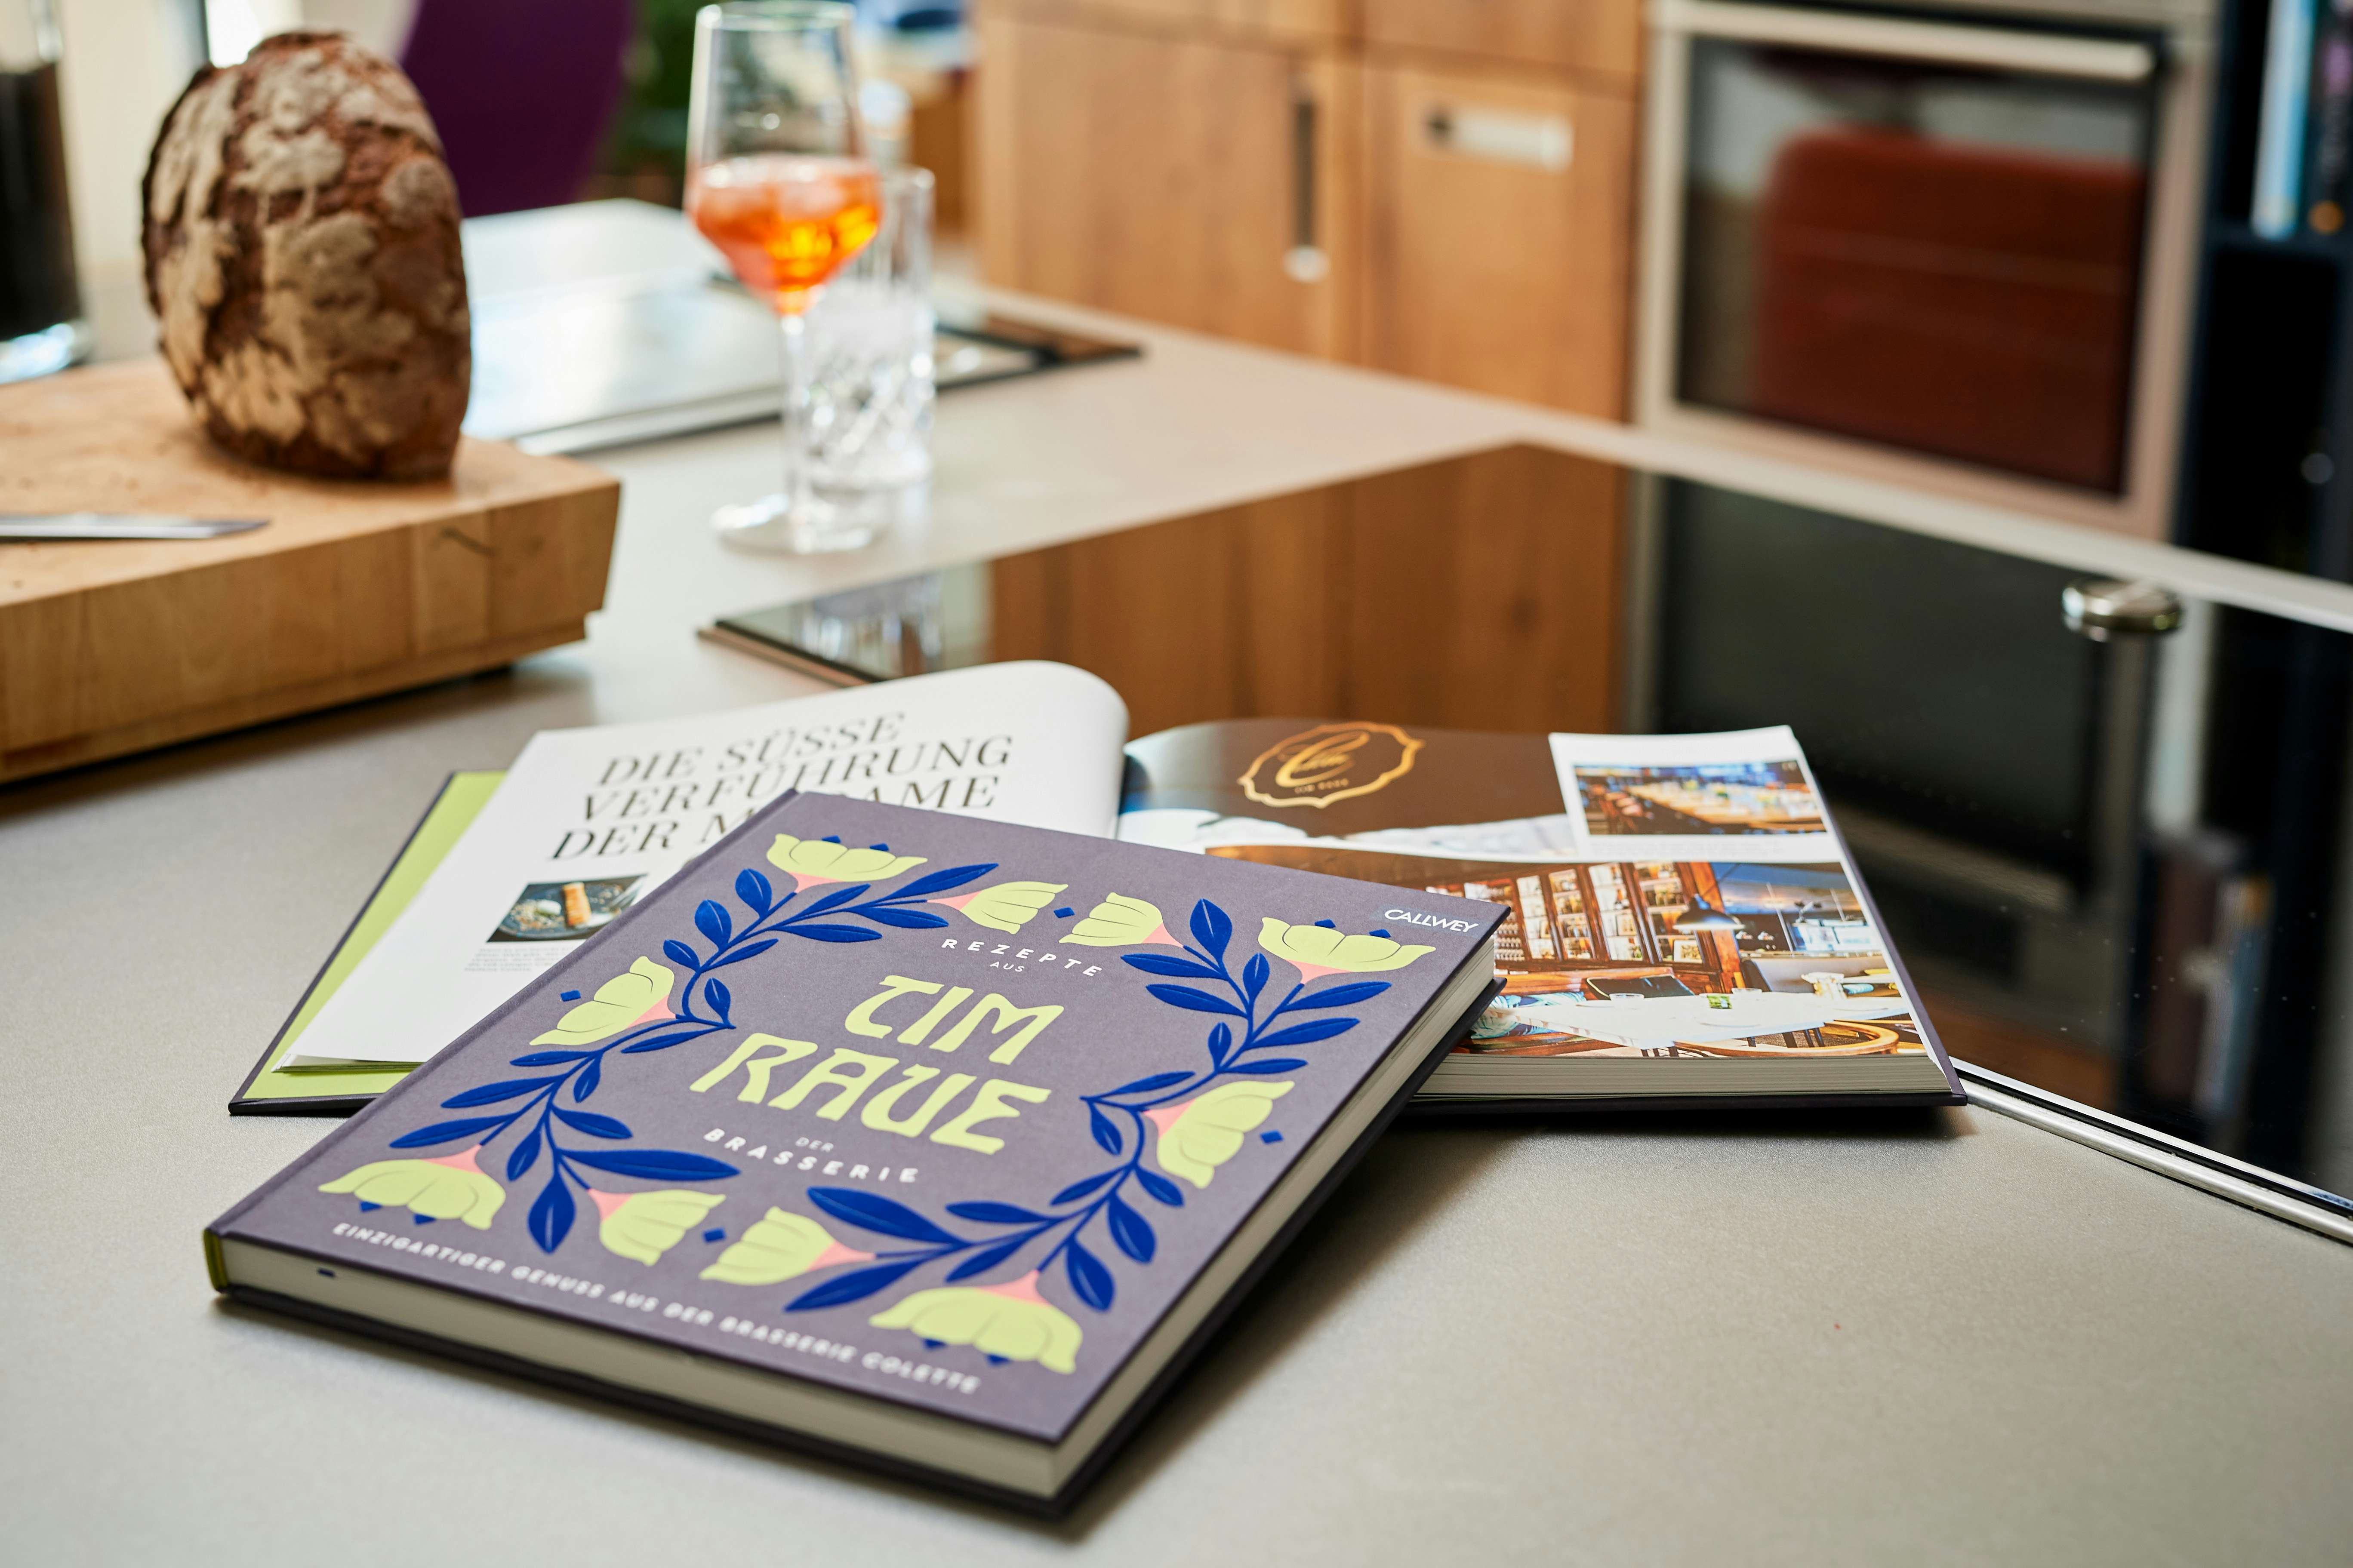 Das Kochbuch »Tim Raue – Rezepte aus der Brasserie« auf der Küchenarbeitsfläche. Ein Glas Apperol und ein Laib Brot im Hintergrund.